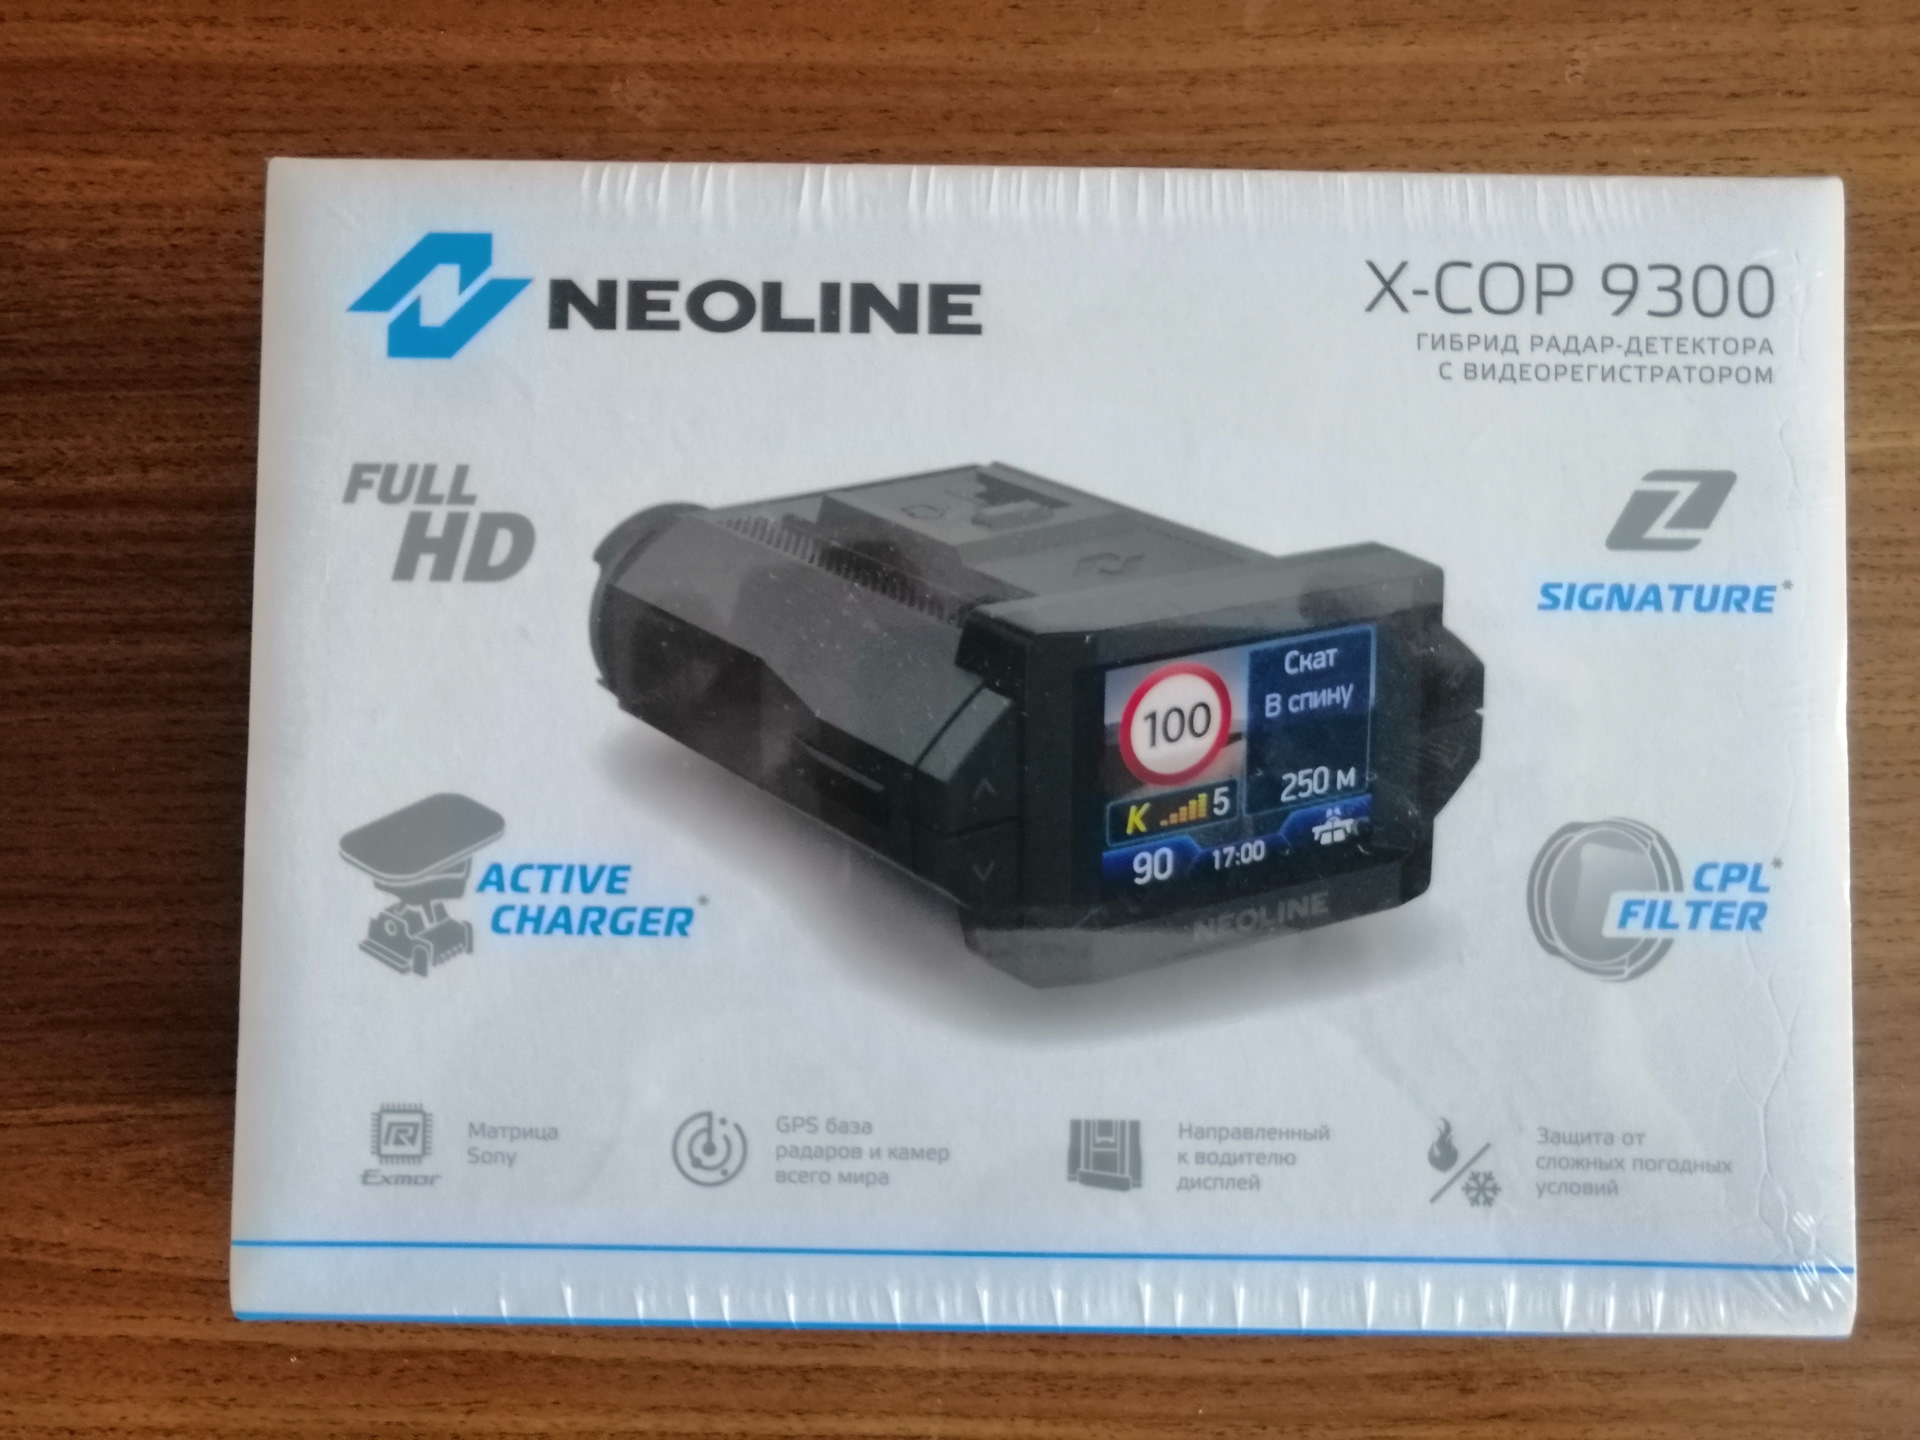 Neoline x cop 9350c